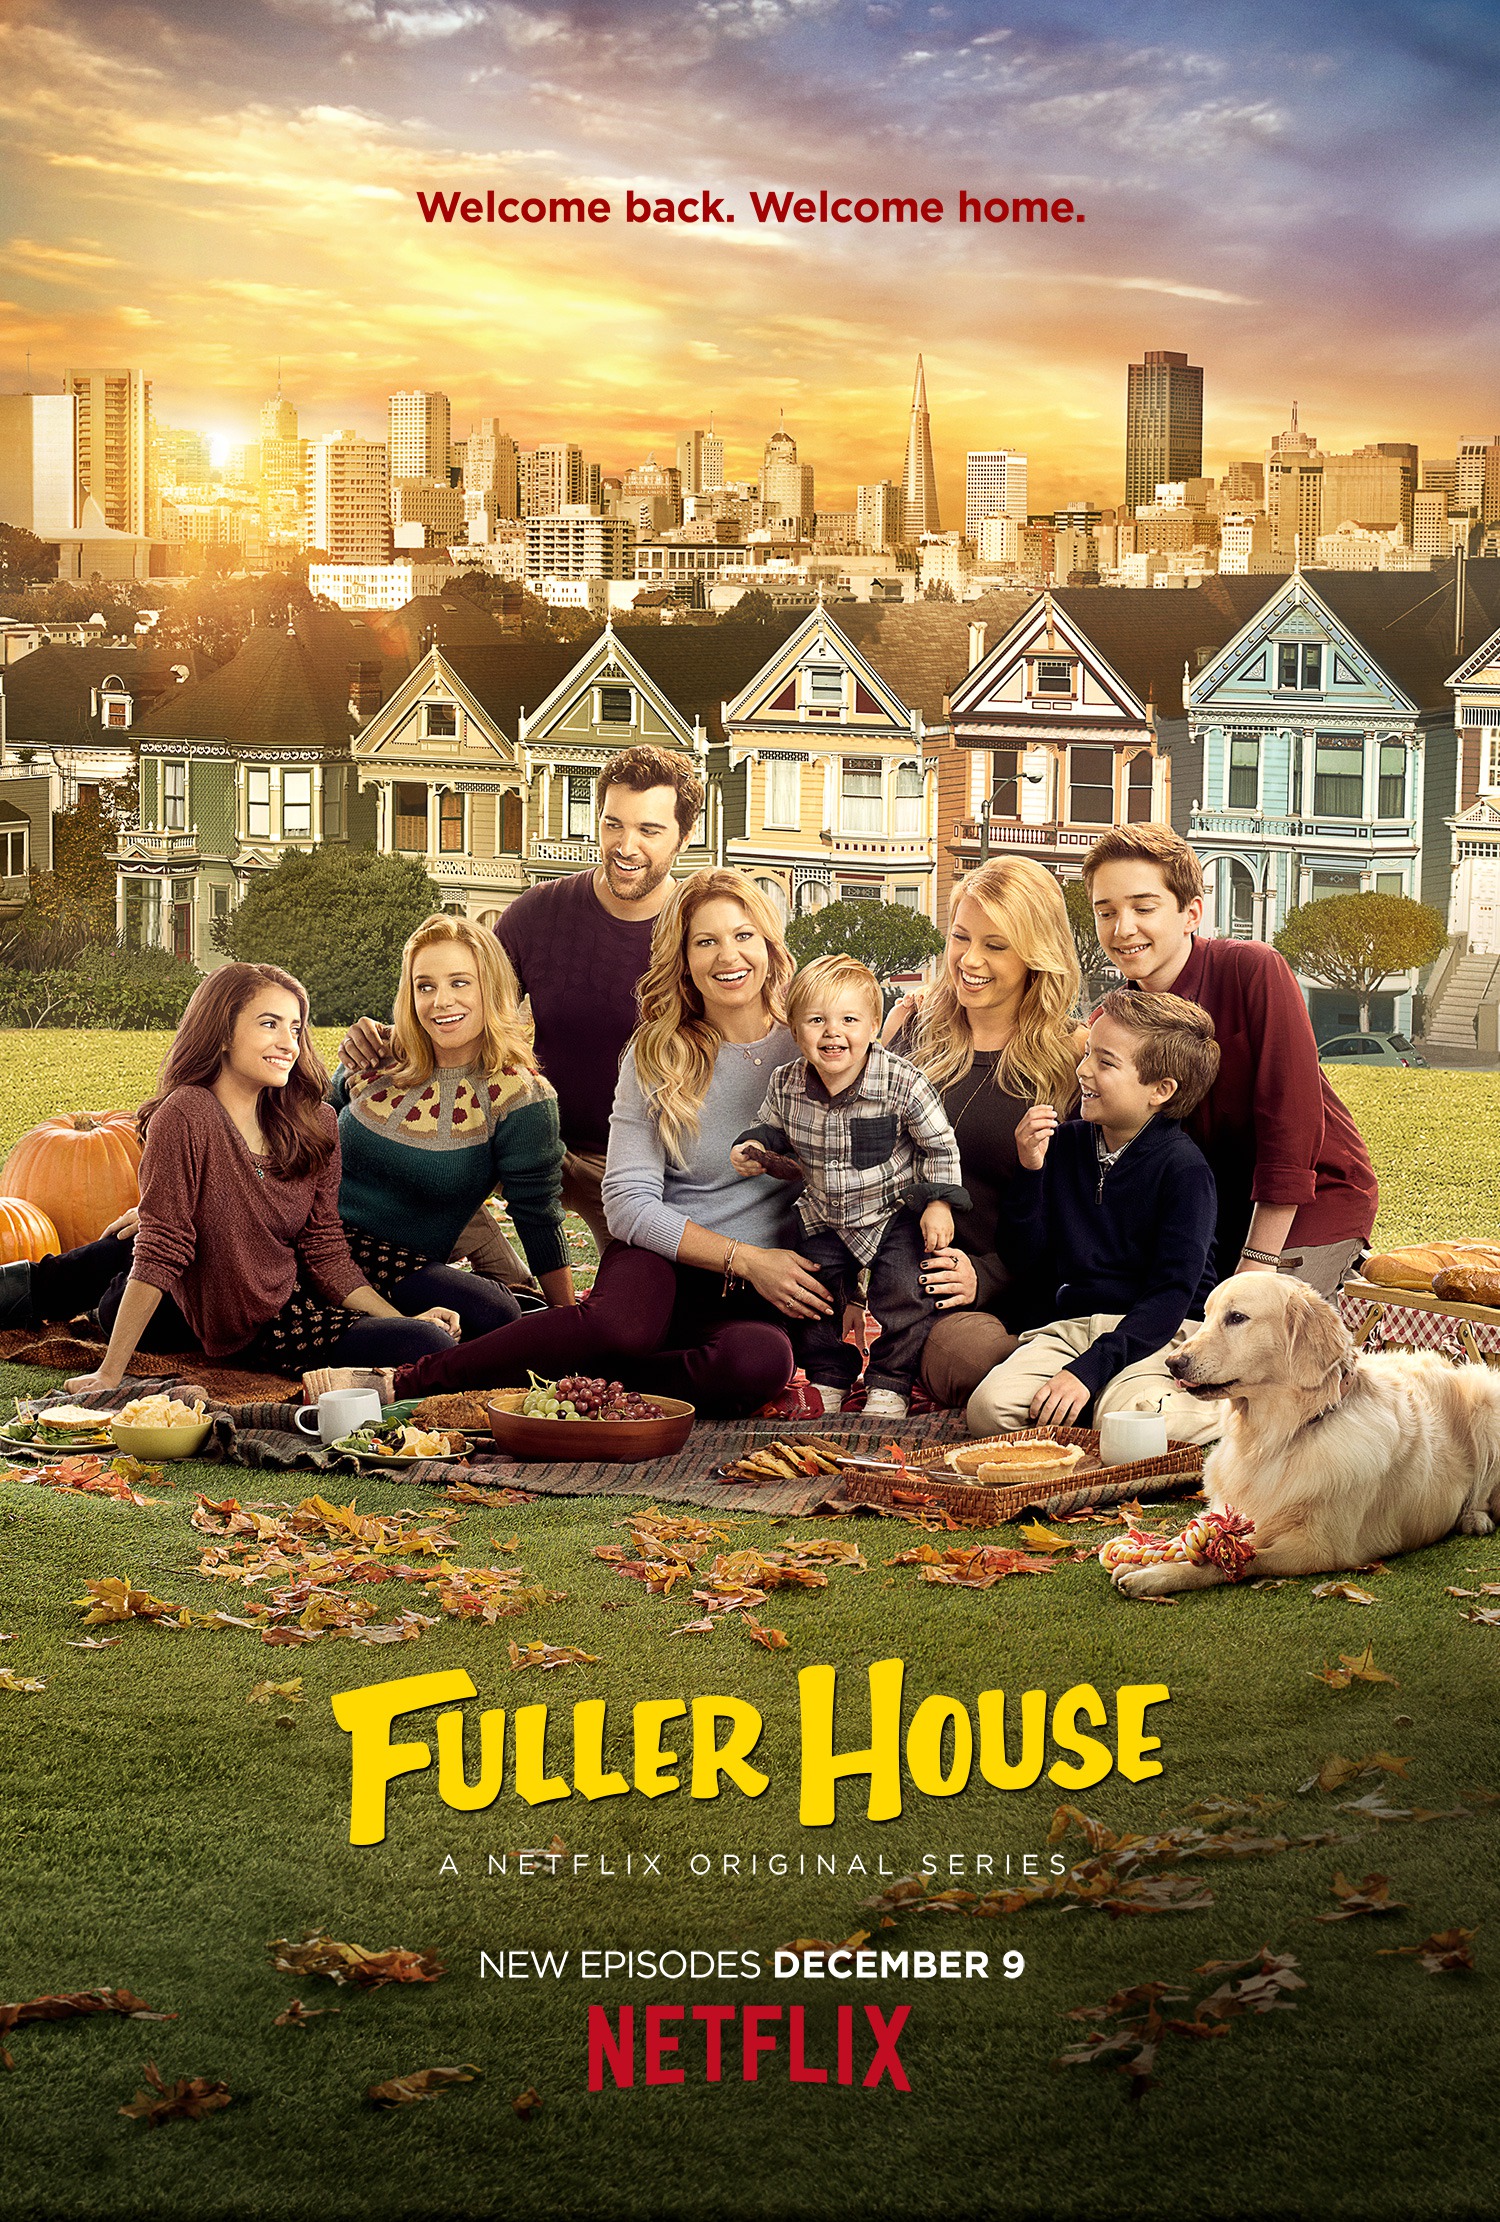 Mega Sized TV Poster Image for Fuller House (#12 of 16)